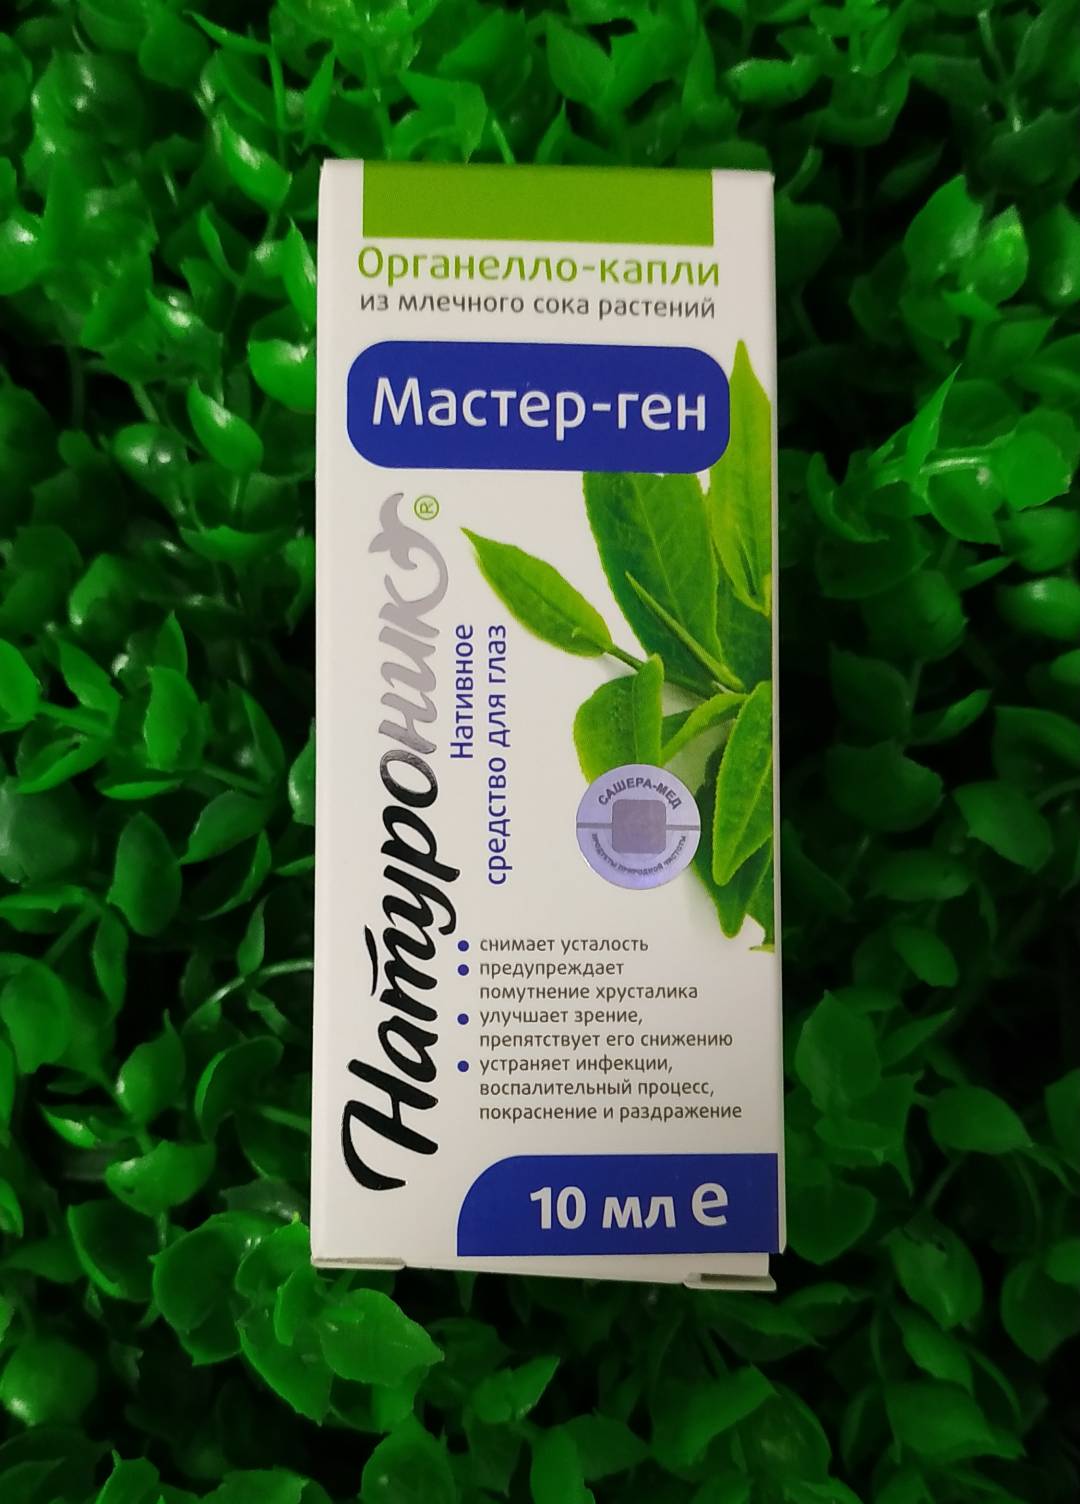 Купить онлайн Мастер-ген органелло-капли (наитивное средство для глаз), 10 мл в интернет-магазине Беришка с доставкой по Хабаровску и по России недорого.